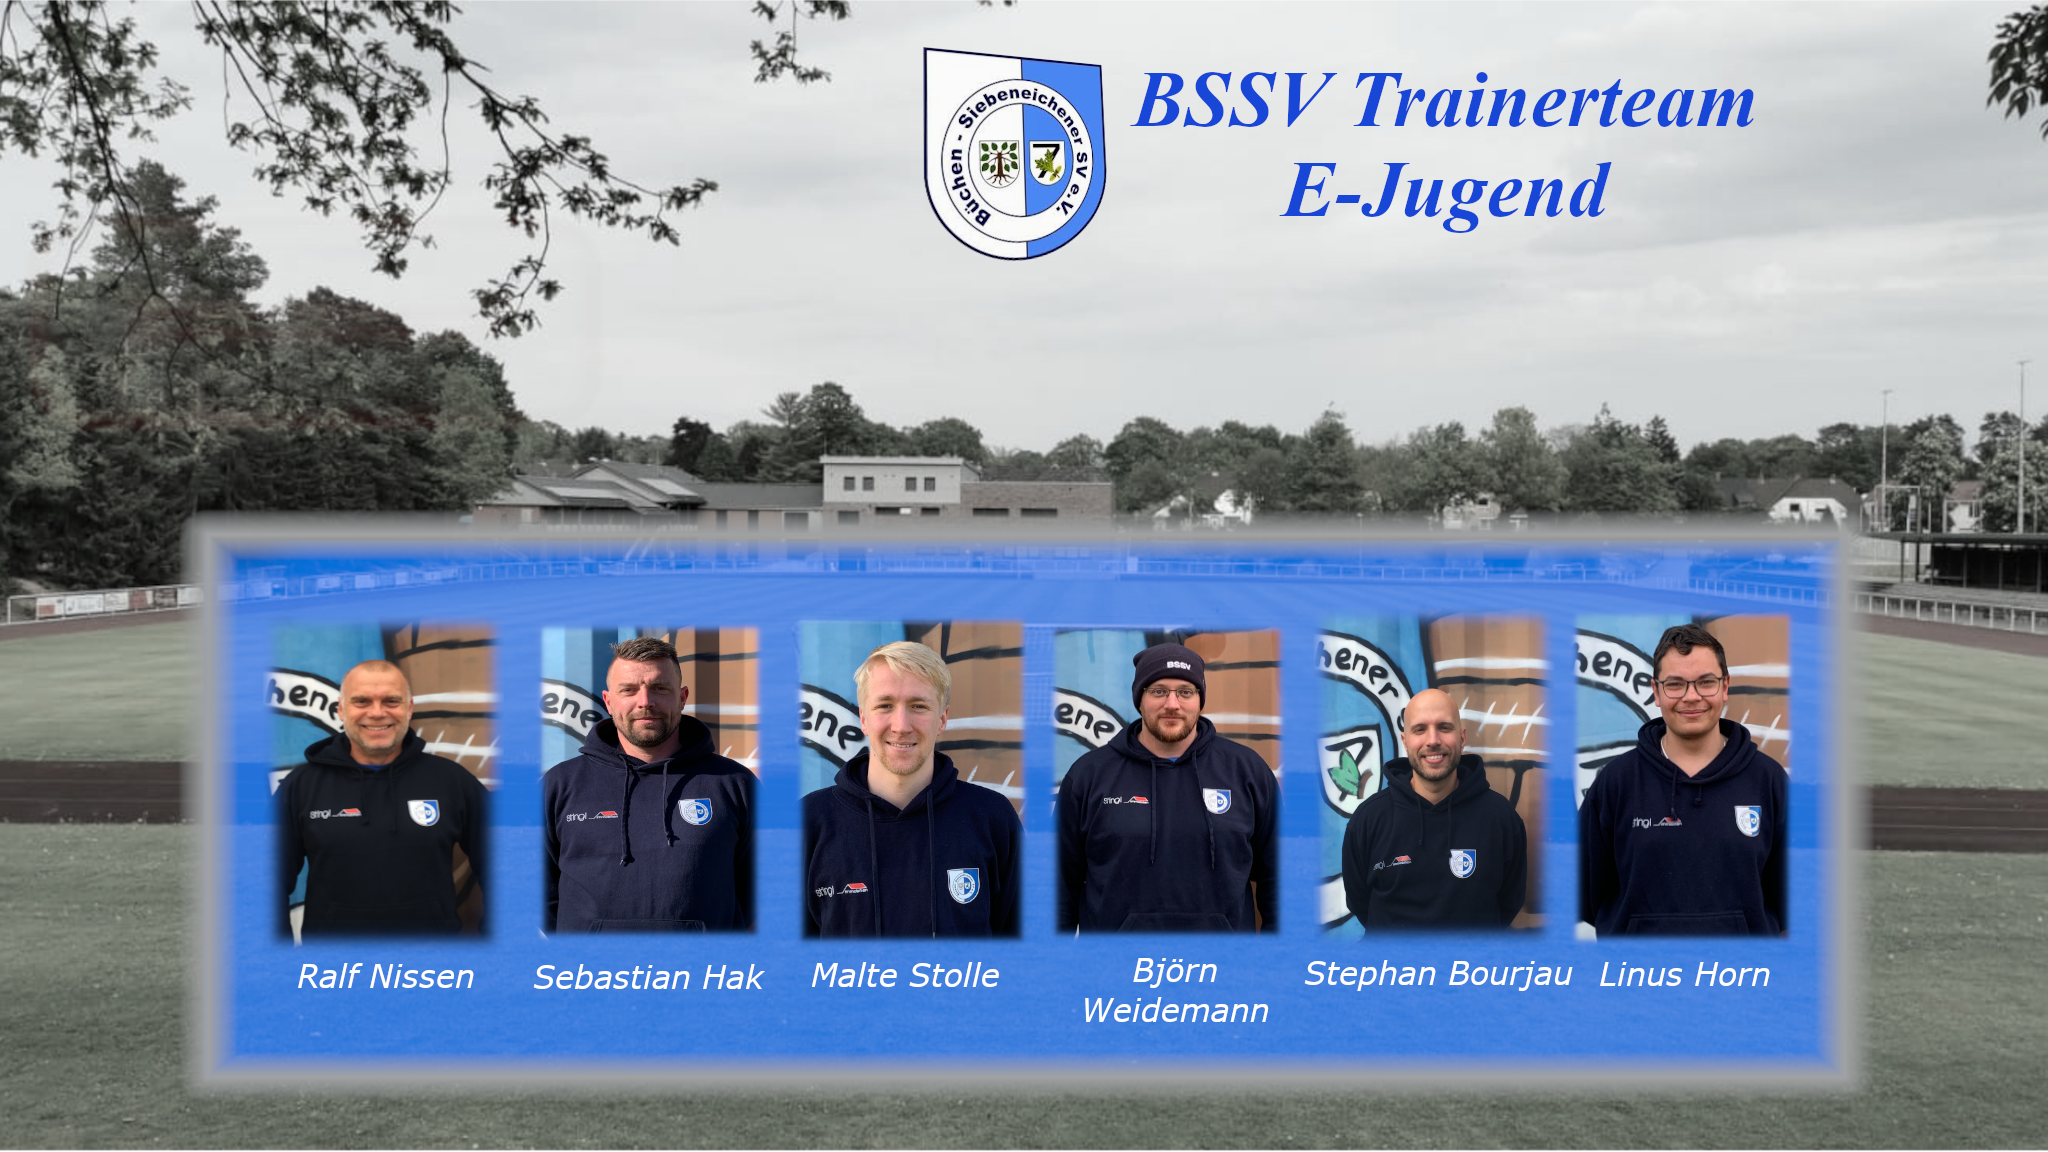 Das Trainerteam der E-Jugend des BSSVs